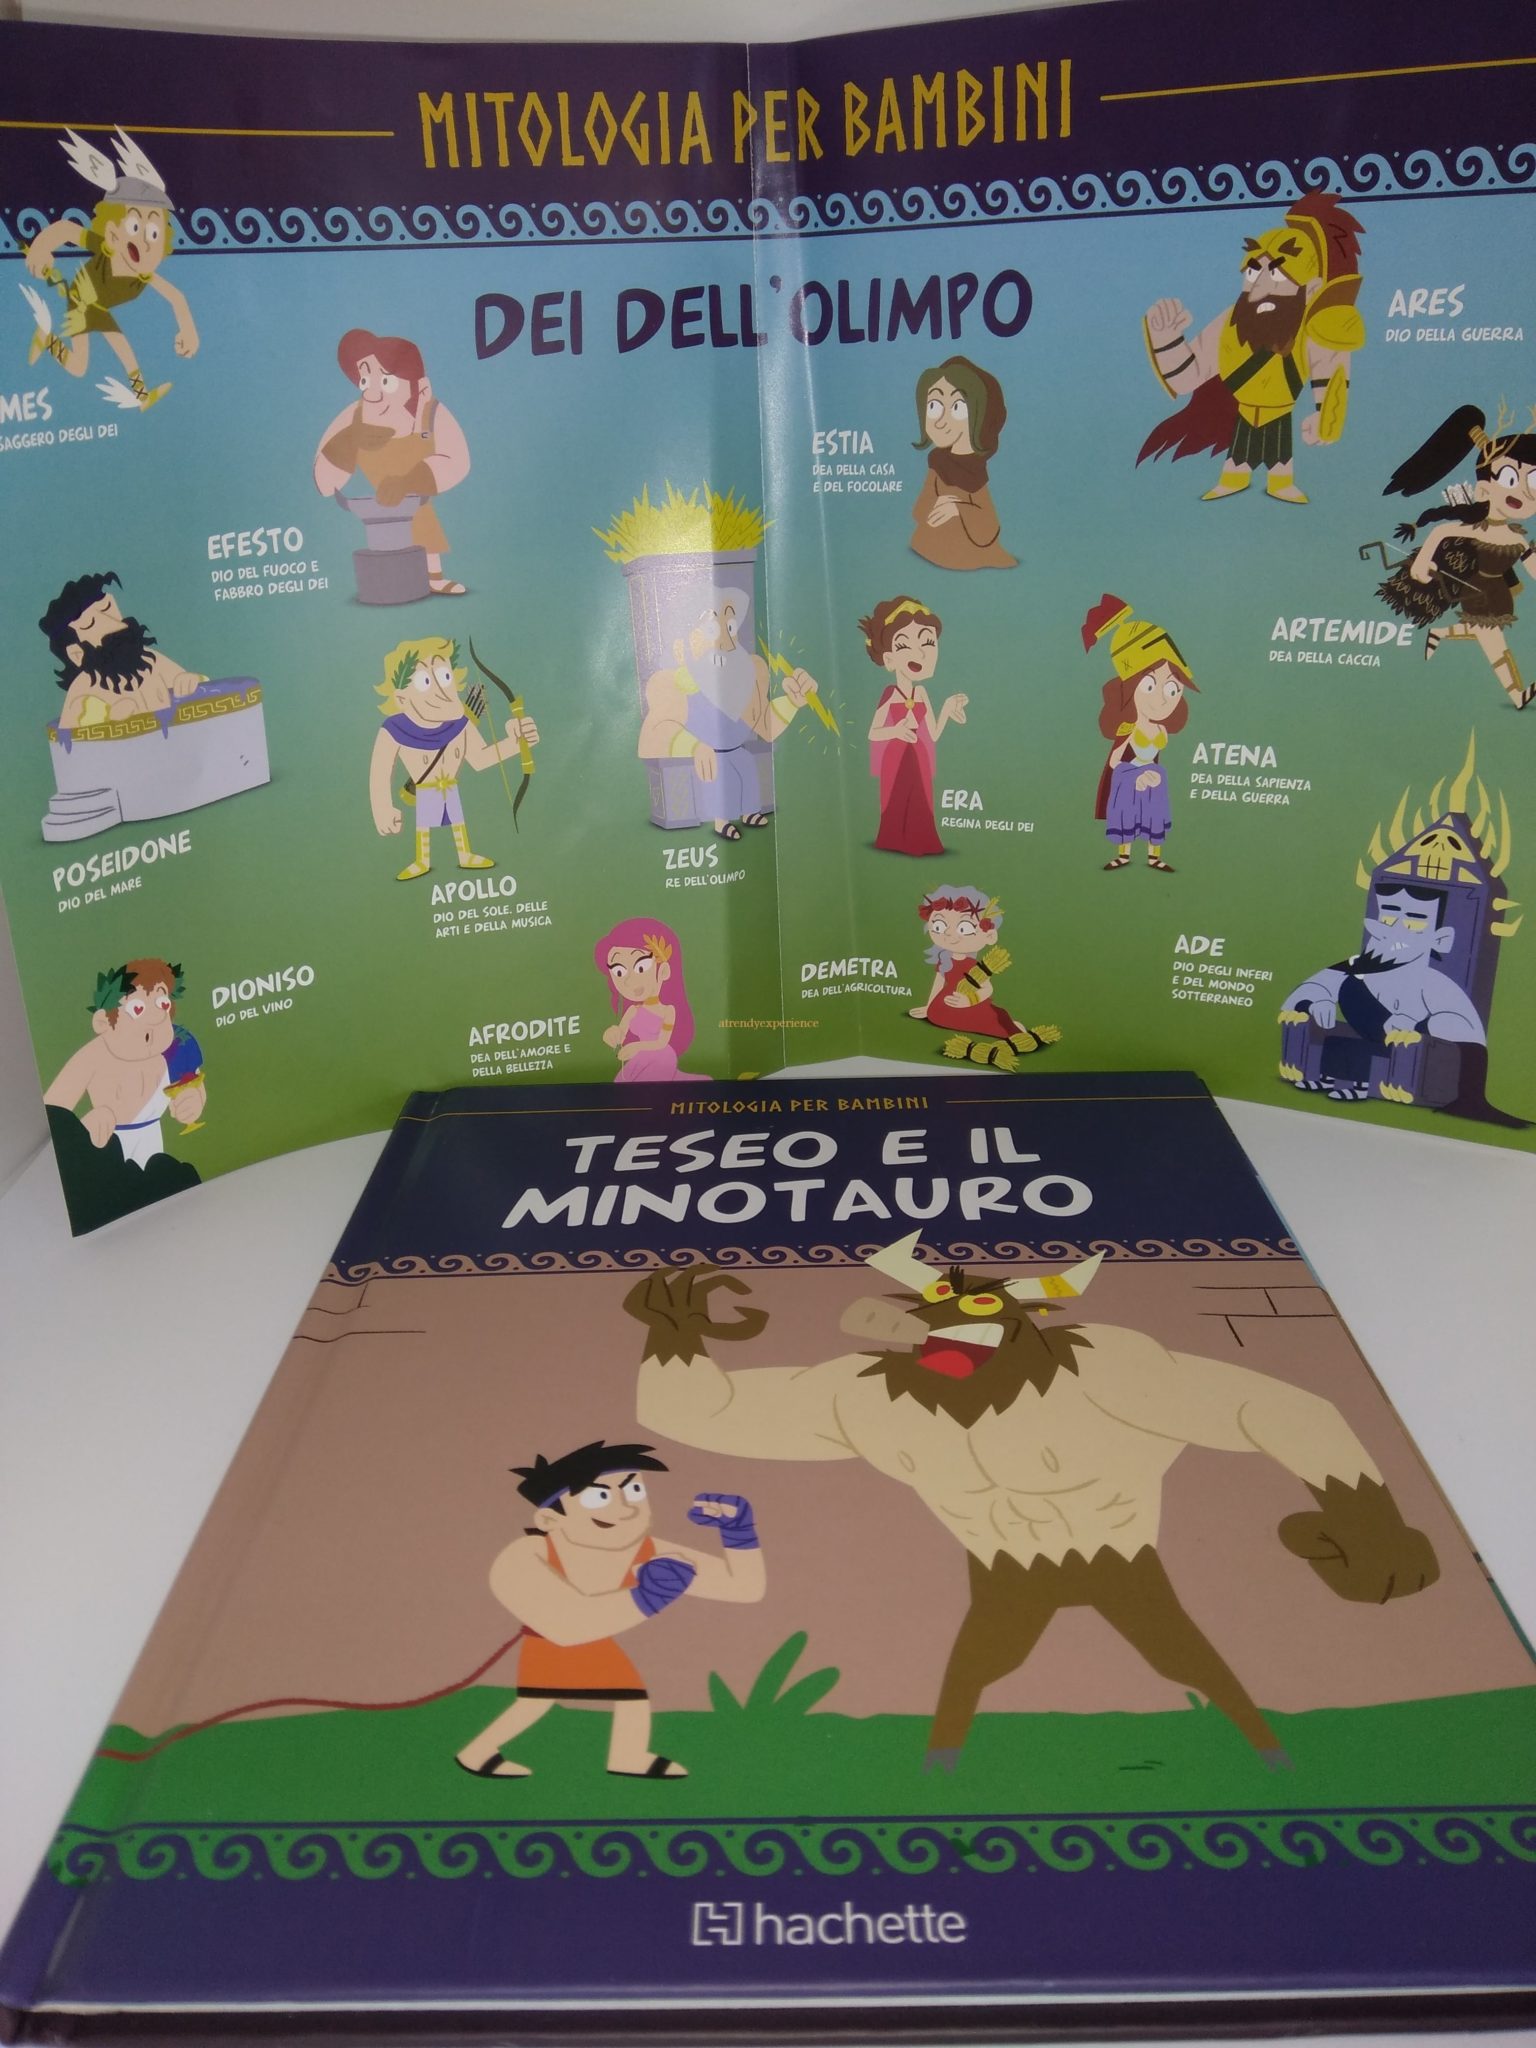 Mitologia Per Bambini di Hachette la nuova collezione di eroi